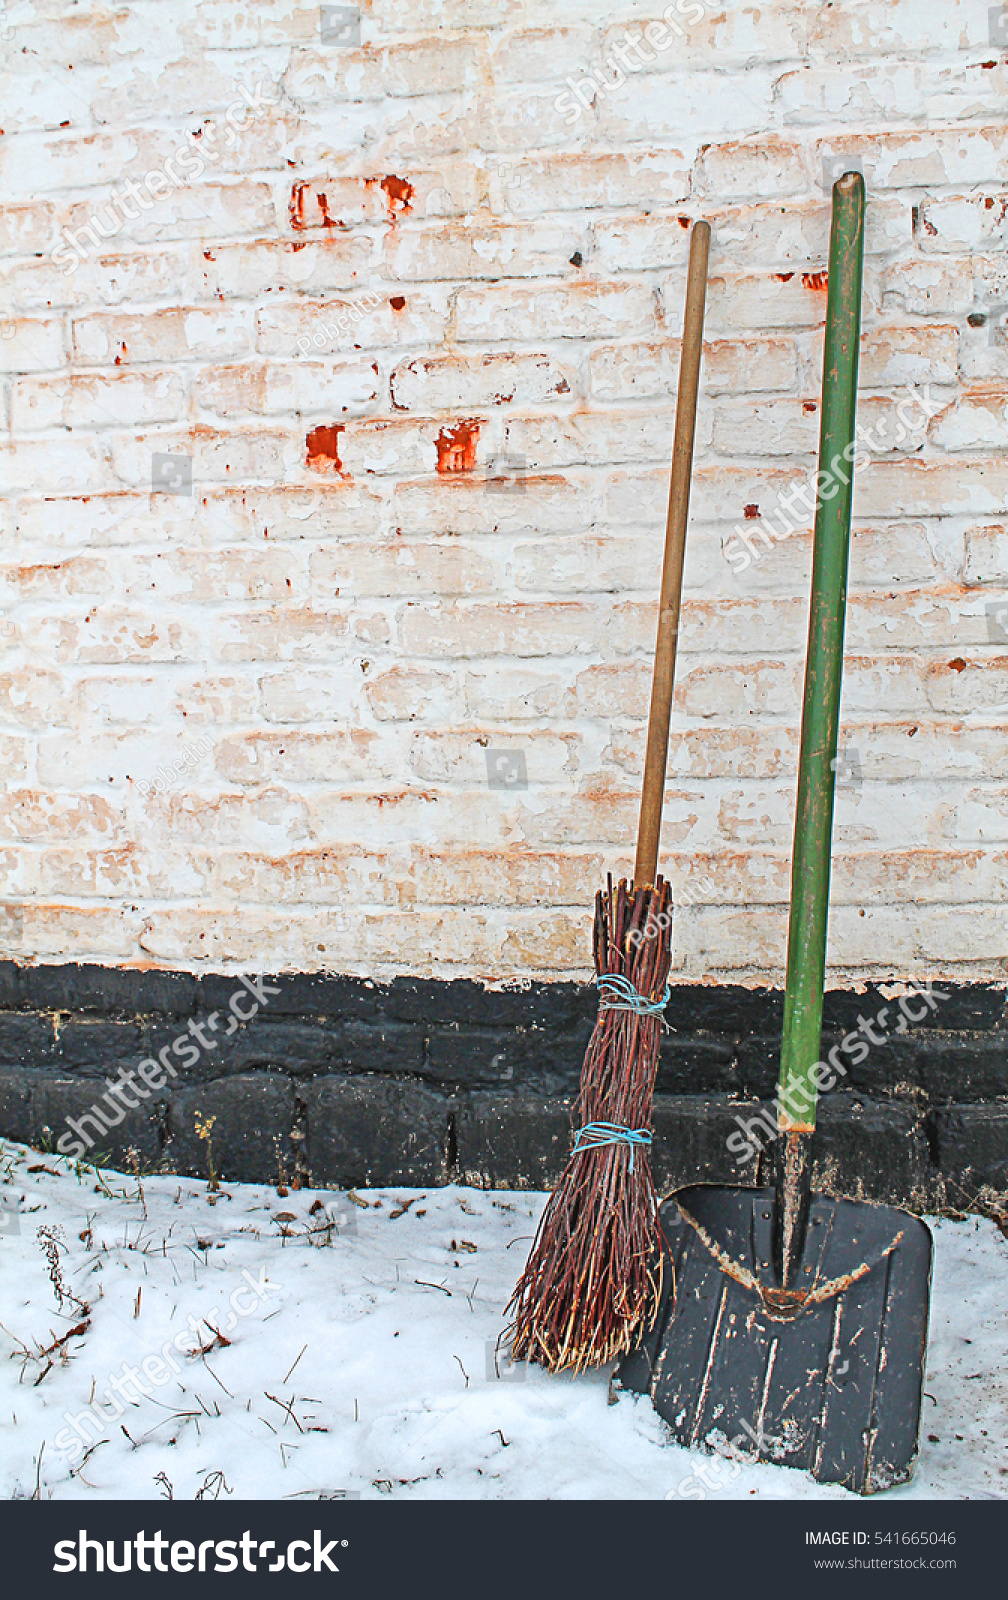 shovel and broom